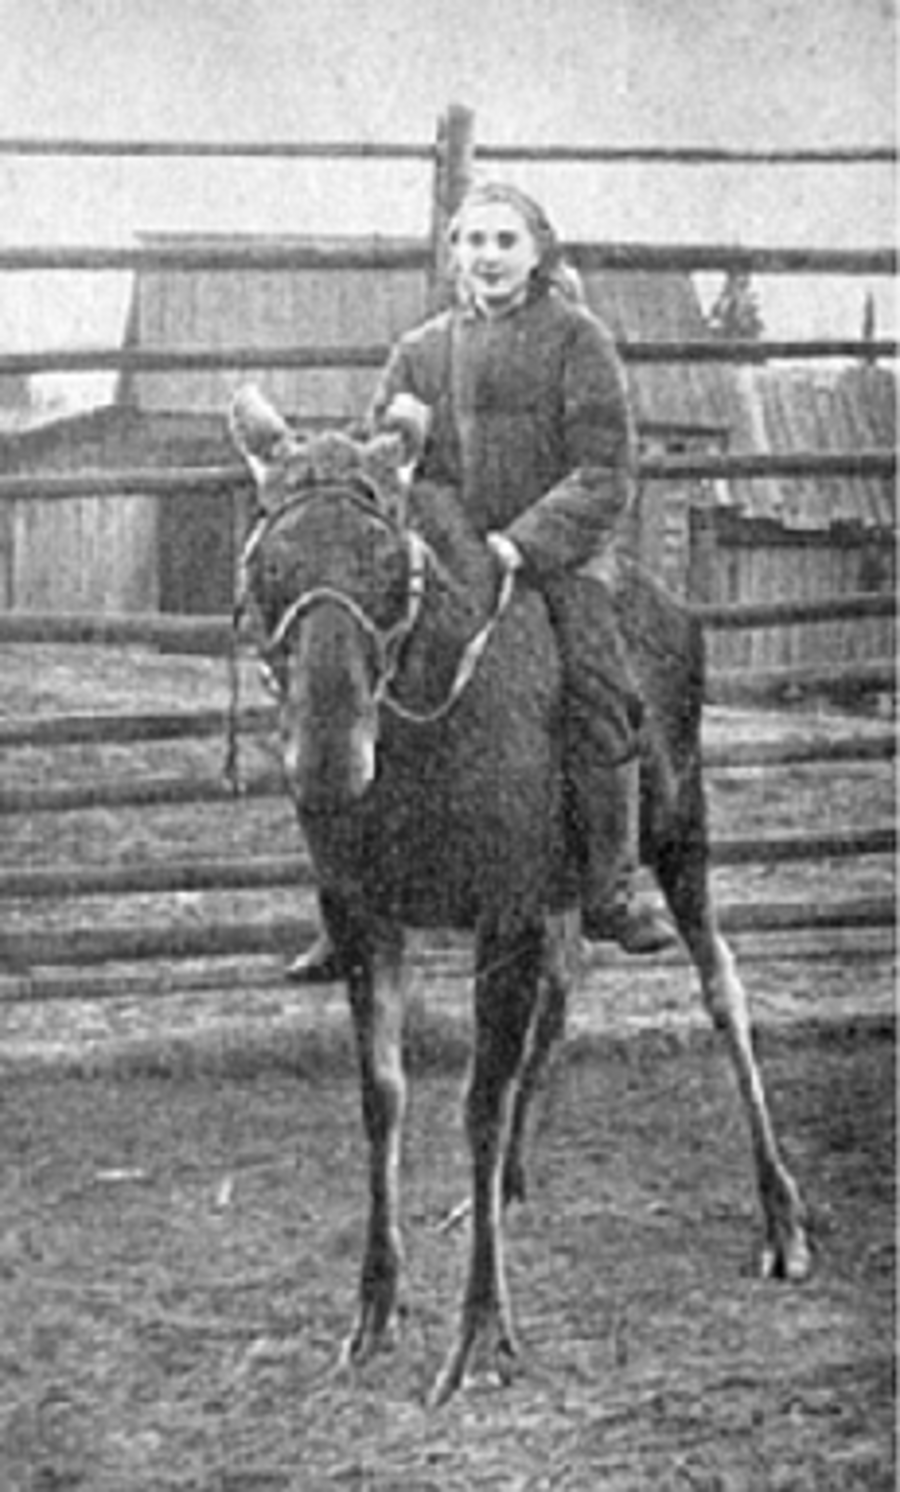  Фото из архива лосиной фермы Печоро-Илычского заповедника 